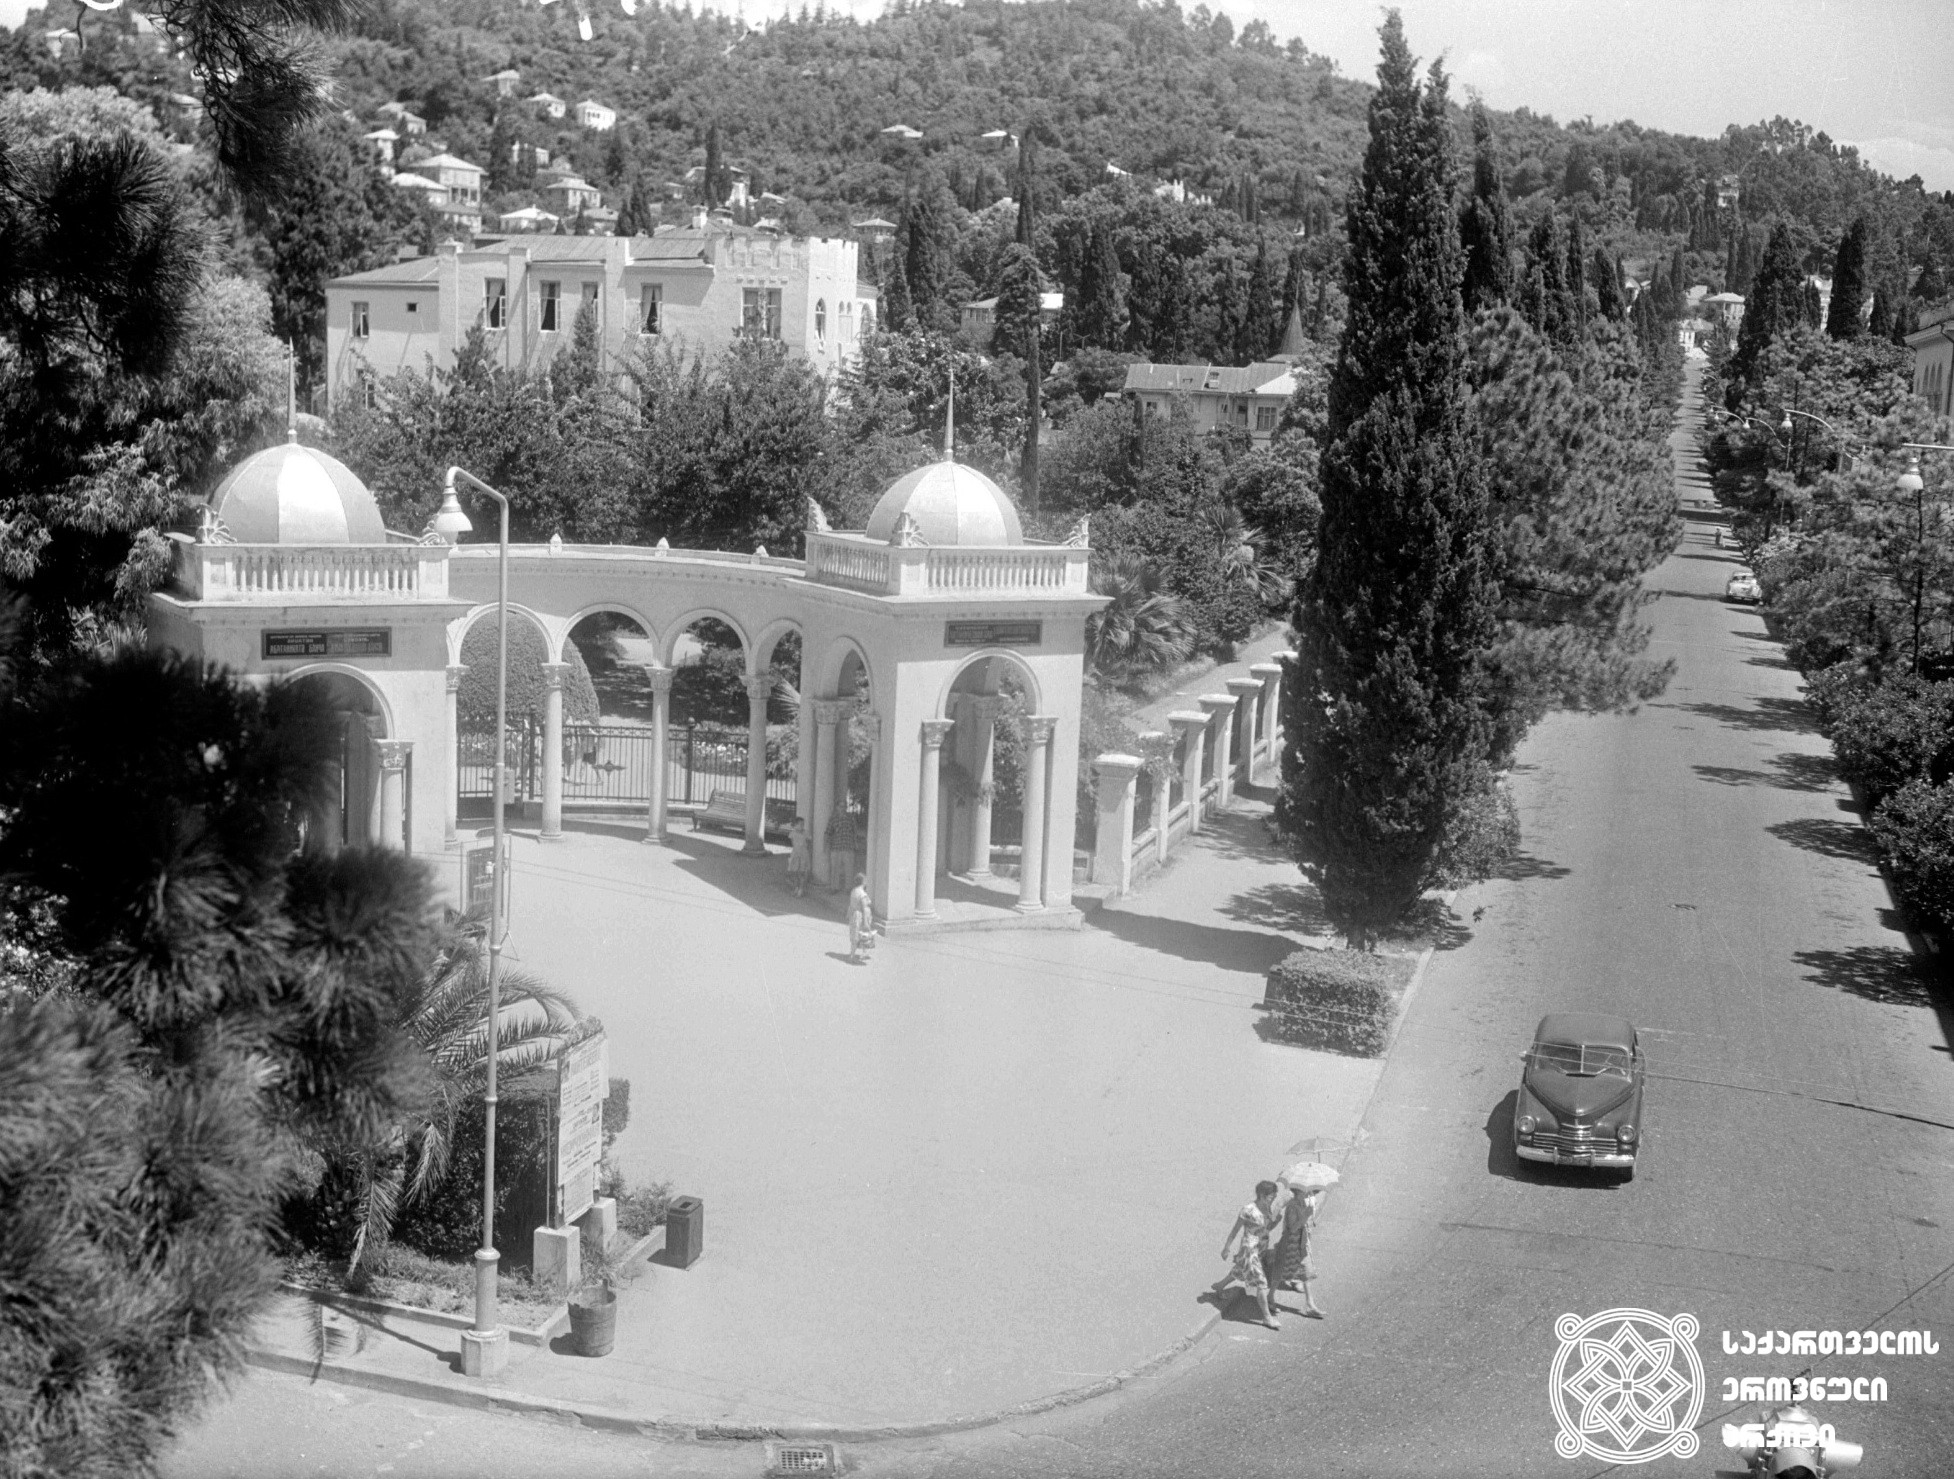 ბოტანიკური ბაღის შესასვლელი და ილია ჭავჭავაძის ქუჩის საერთო ხედი <br>
1963 წელი. ფოტოს ავტორი ივანე დვალი <br>
The entrance to the botanical garden and the general view of Ilia Chavchavadze street <br>
1963. Photo by Ivane Dvali.